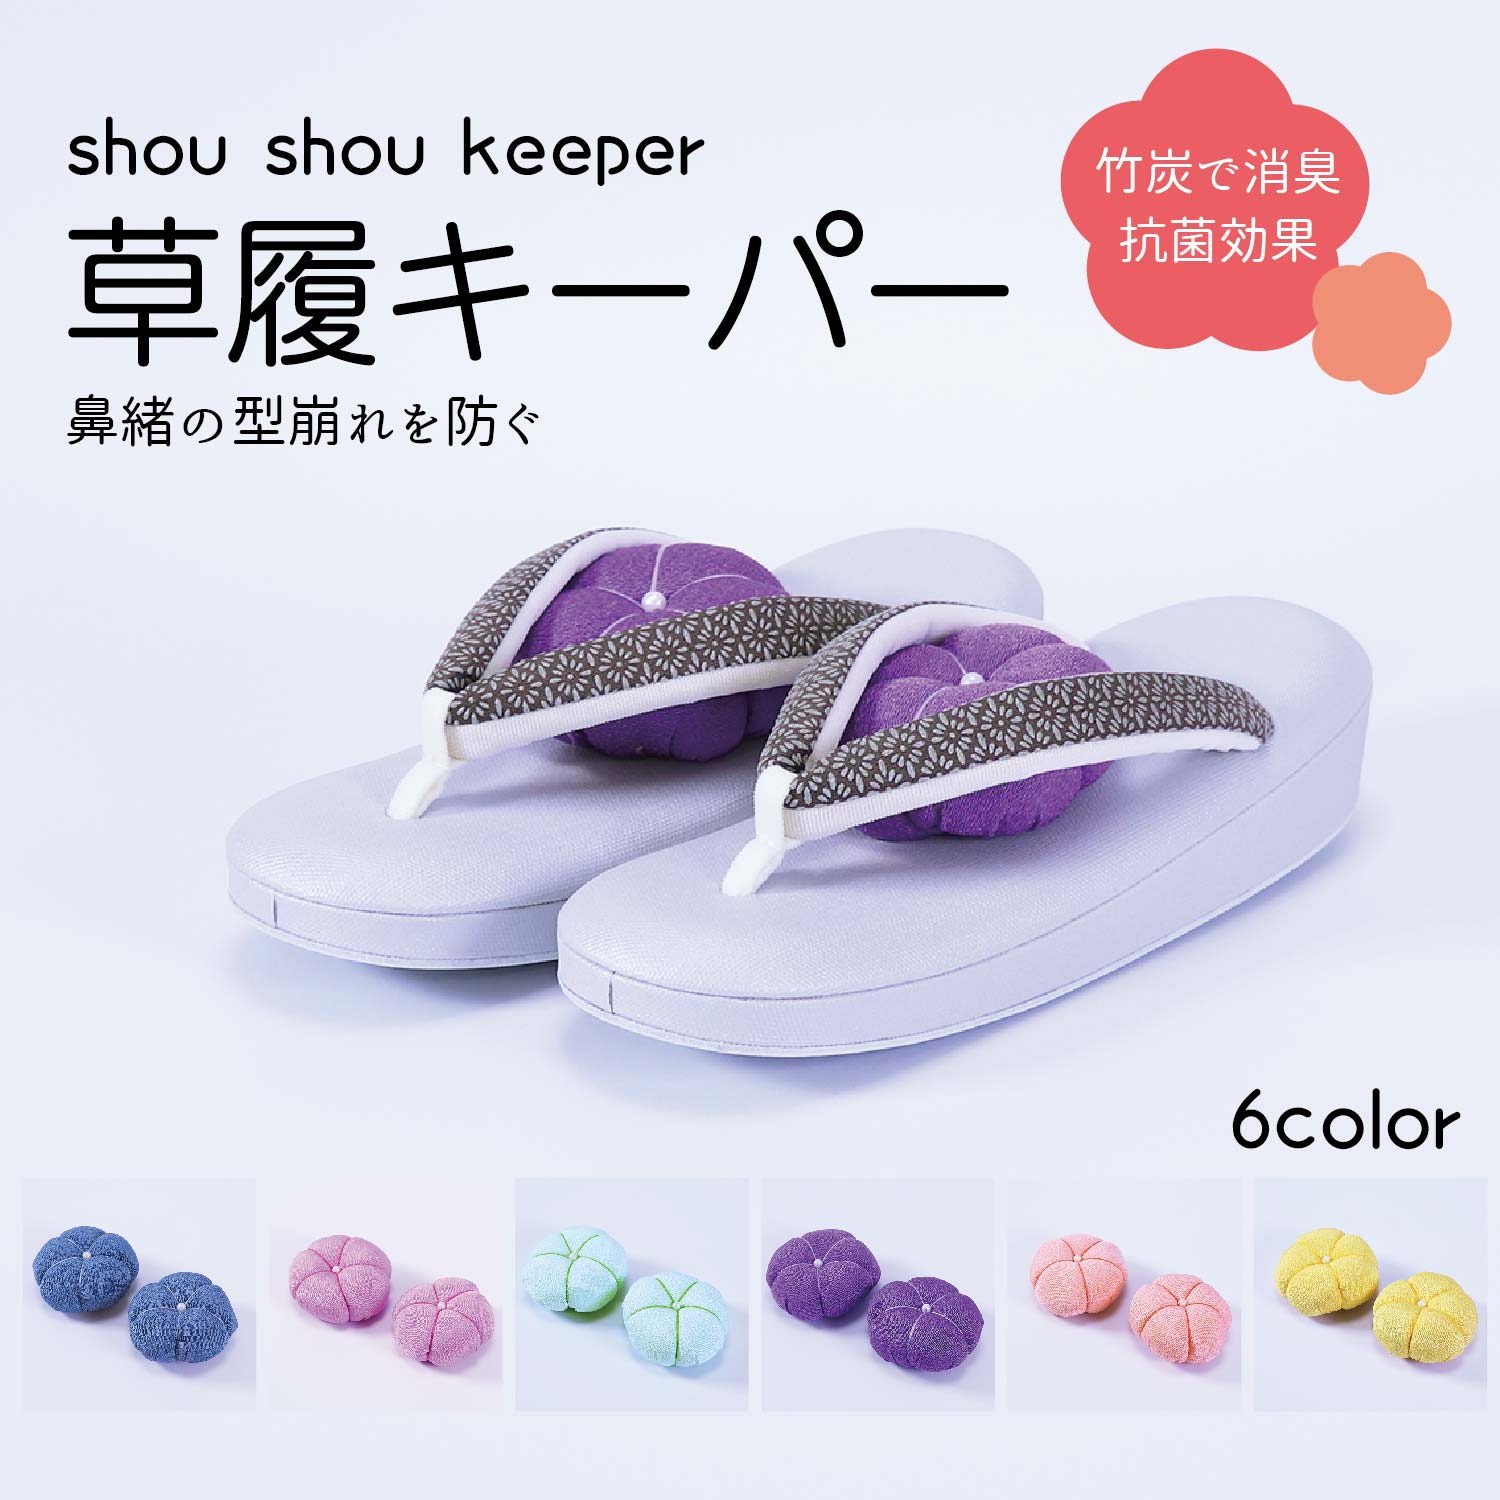 選べる6色、草履の型崩れ防止に！『Shou Shou keeper 草履キーパー』